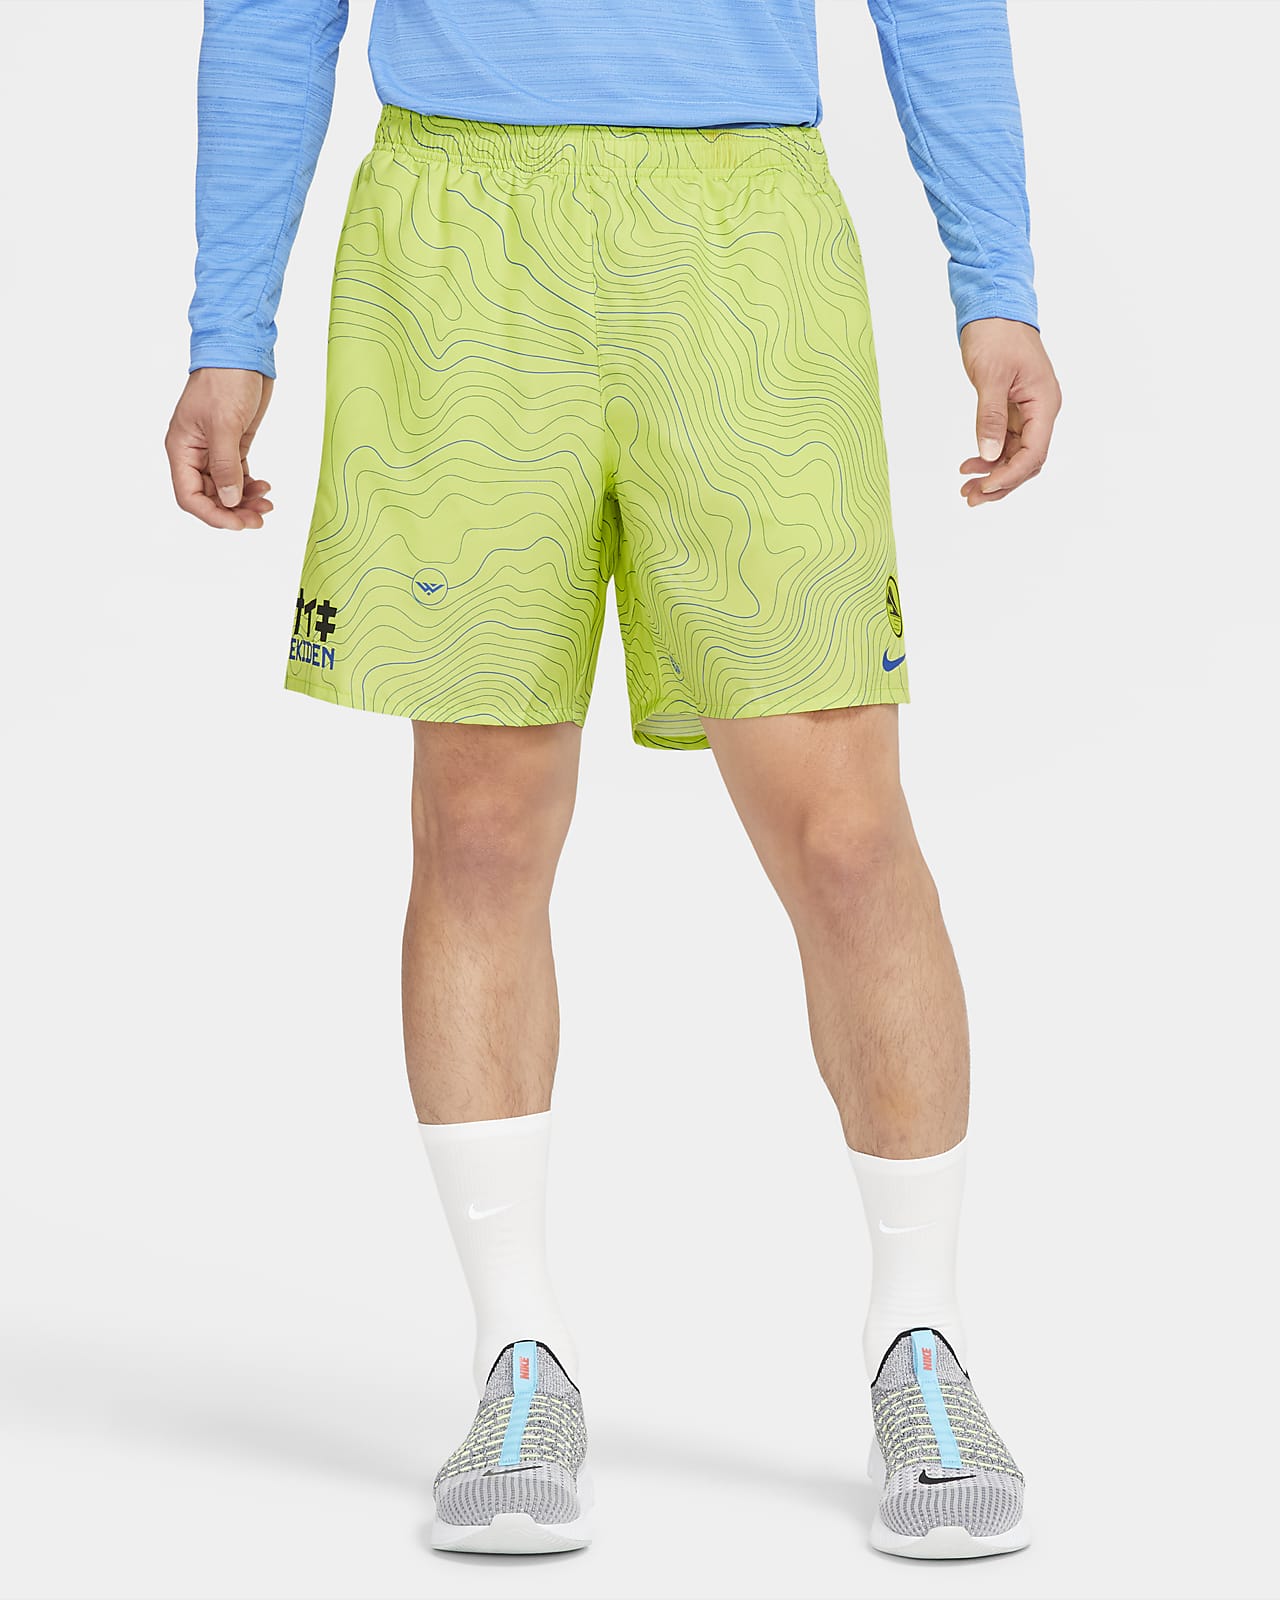 nike mens running shorts built in briefs